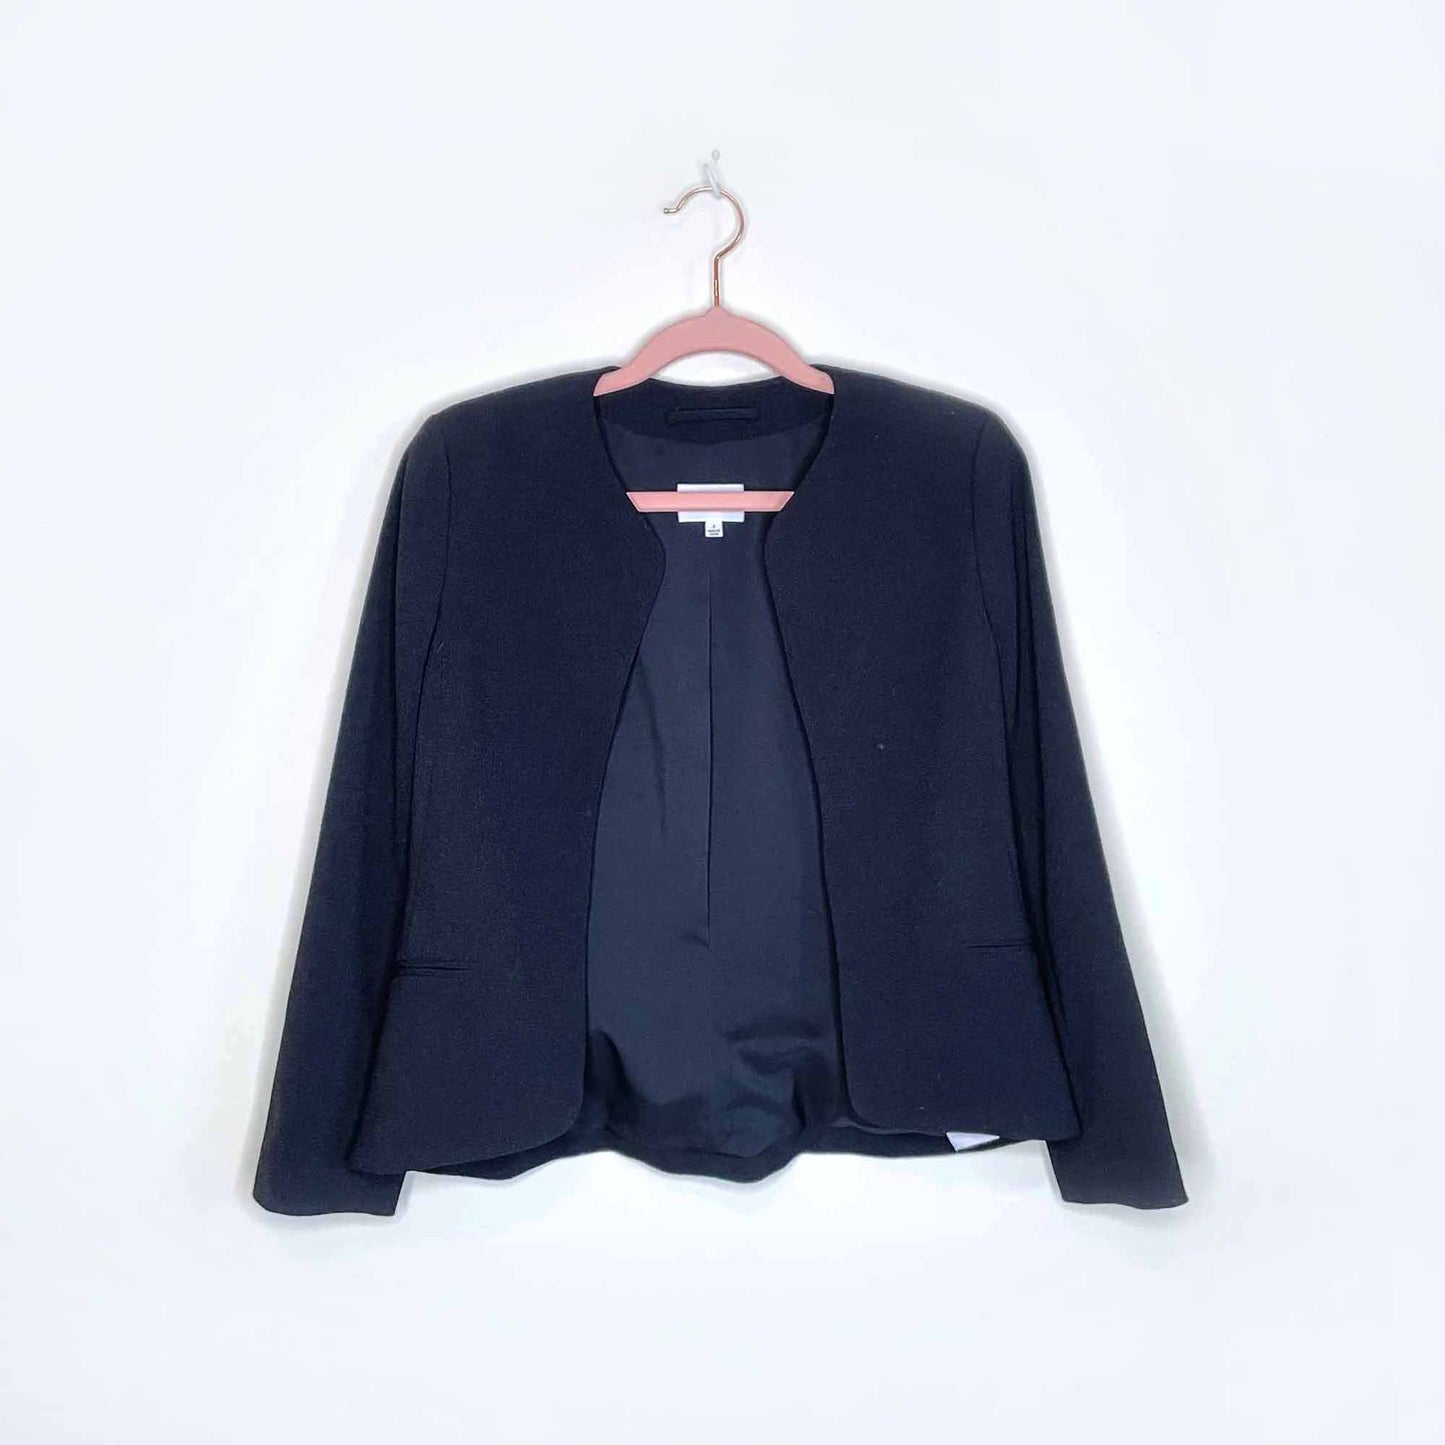 wilfred black exquis blazer jacket - size 2